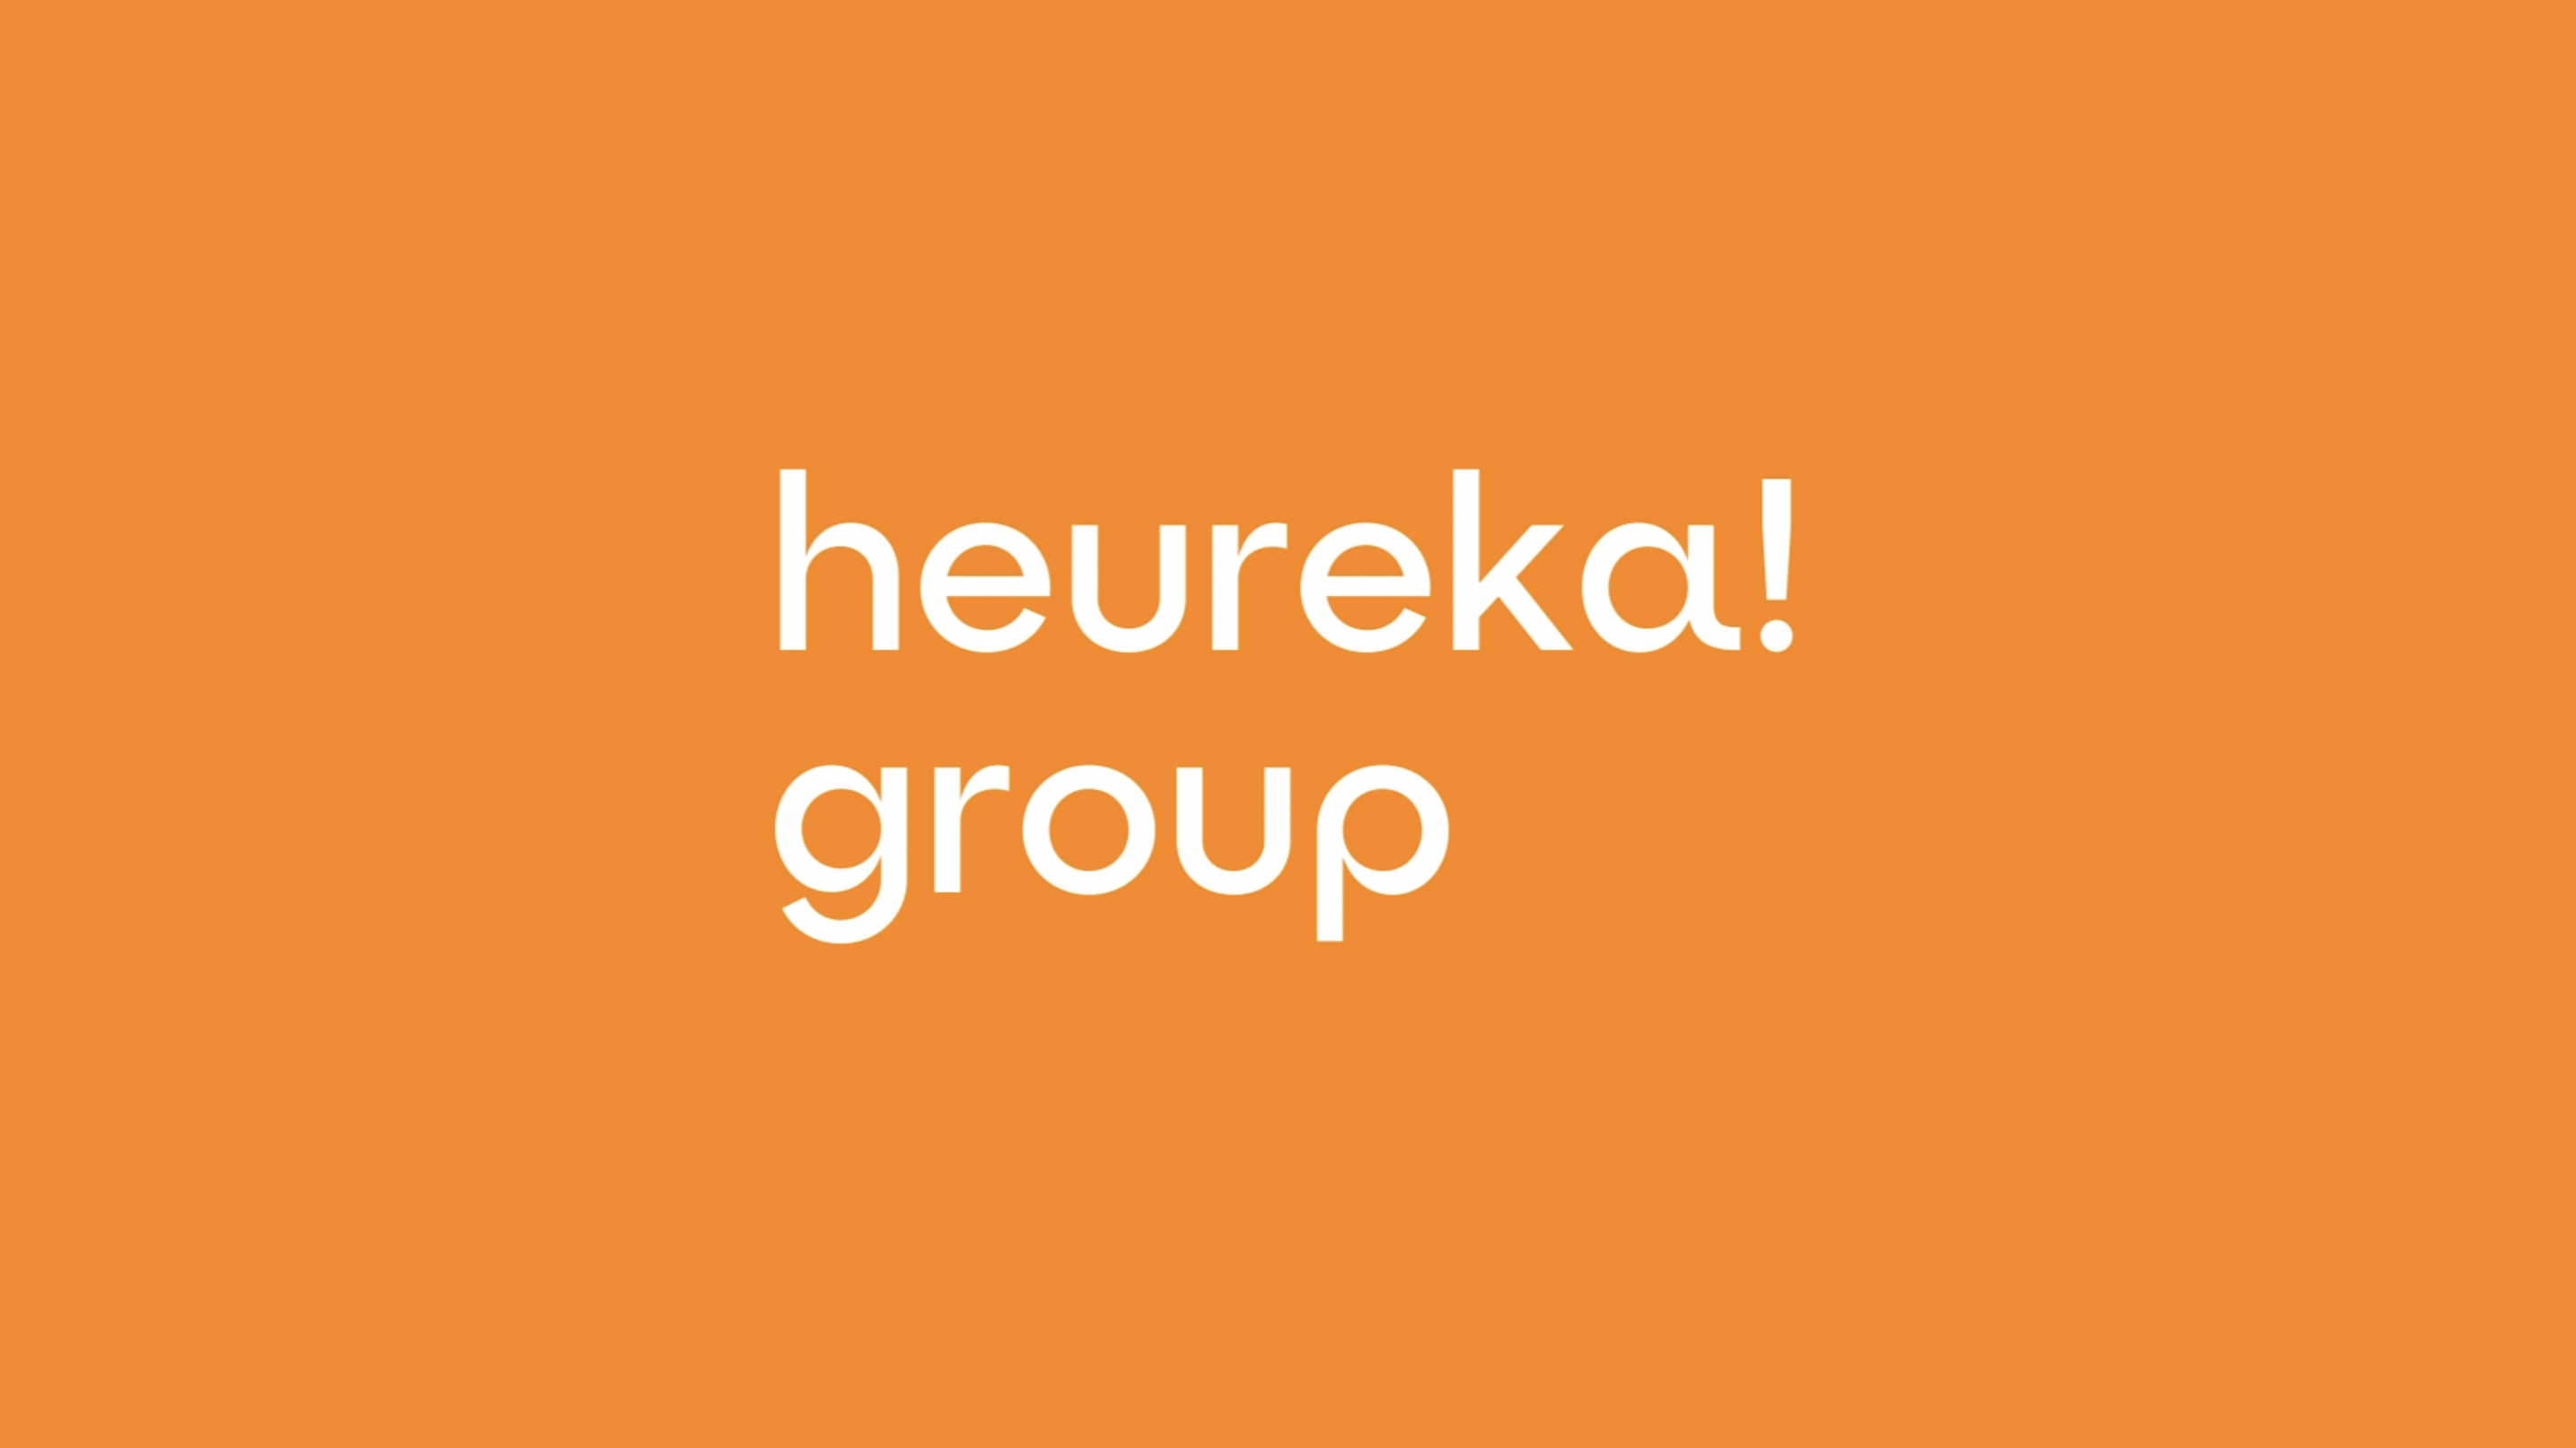 Heureka Group sa mení. Predstavujeme tri nové brandy a s nimi aj úplne novú vizuálnu identitu.